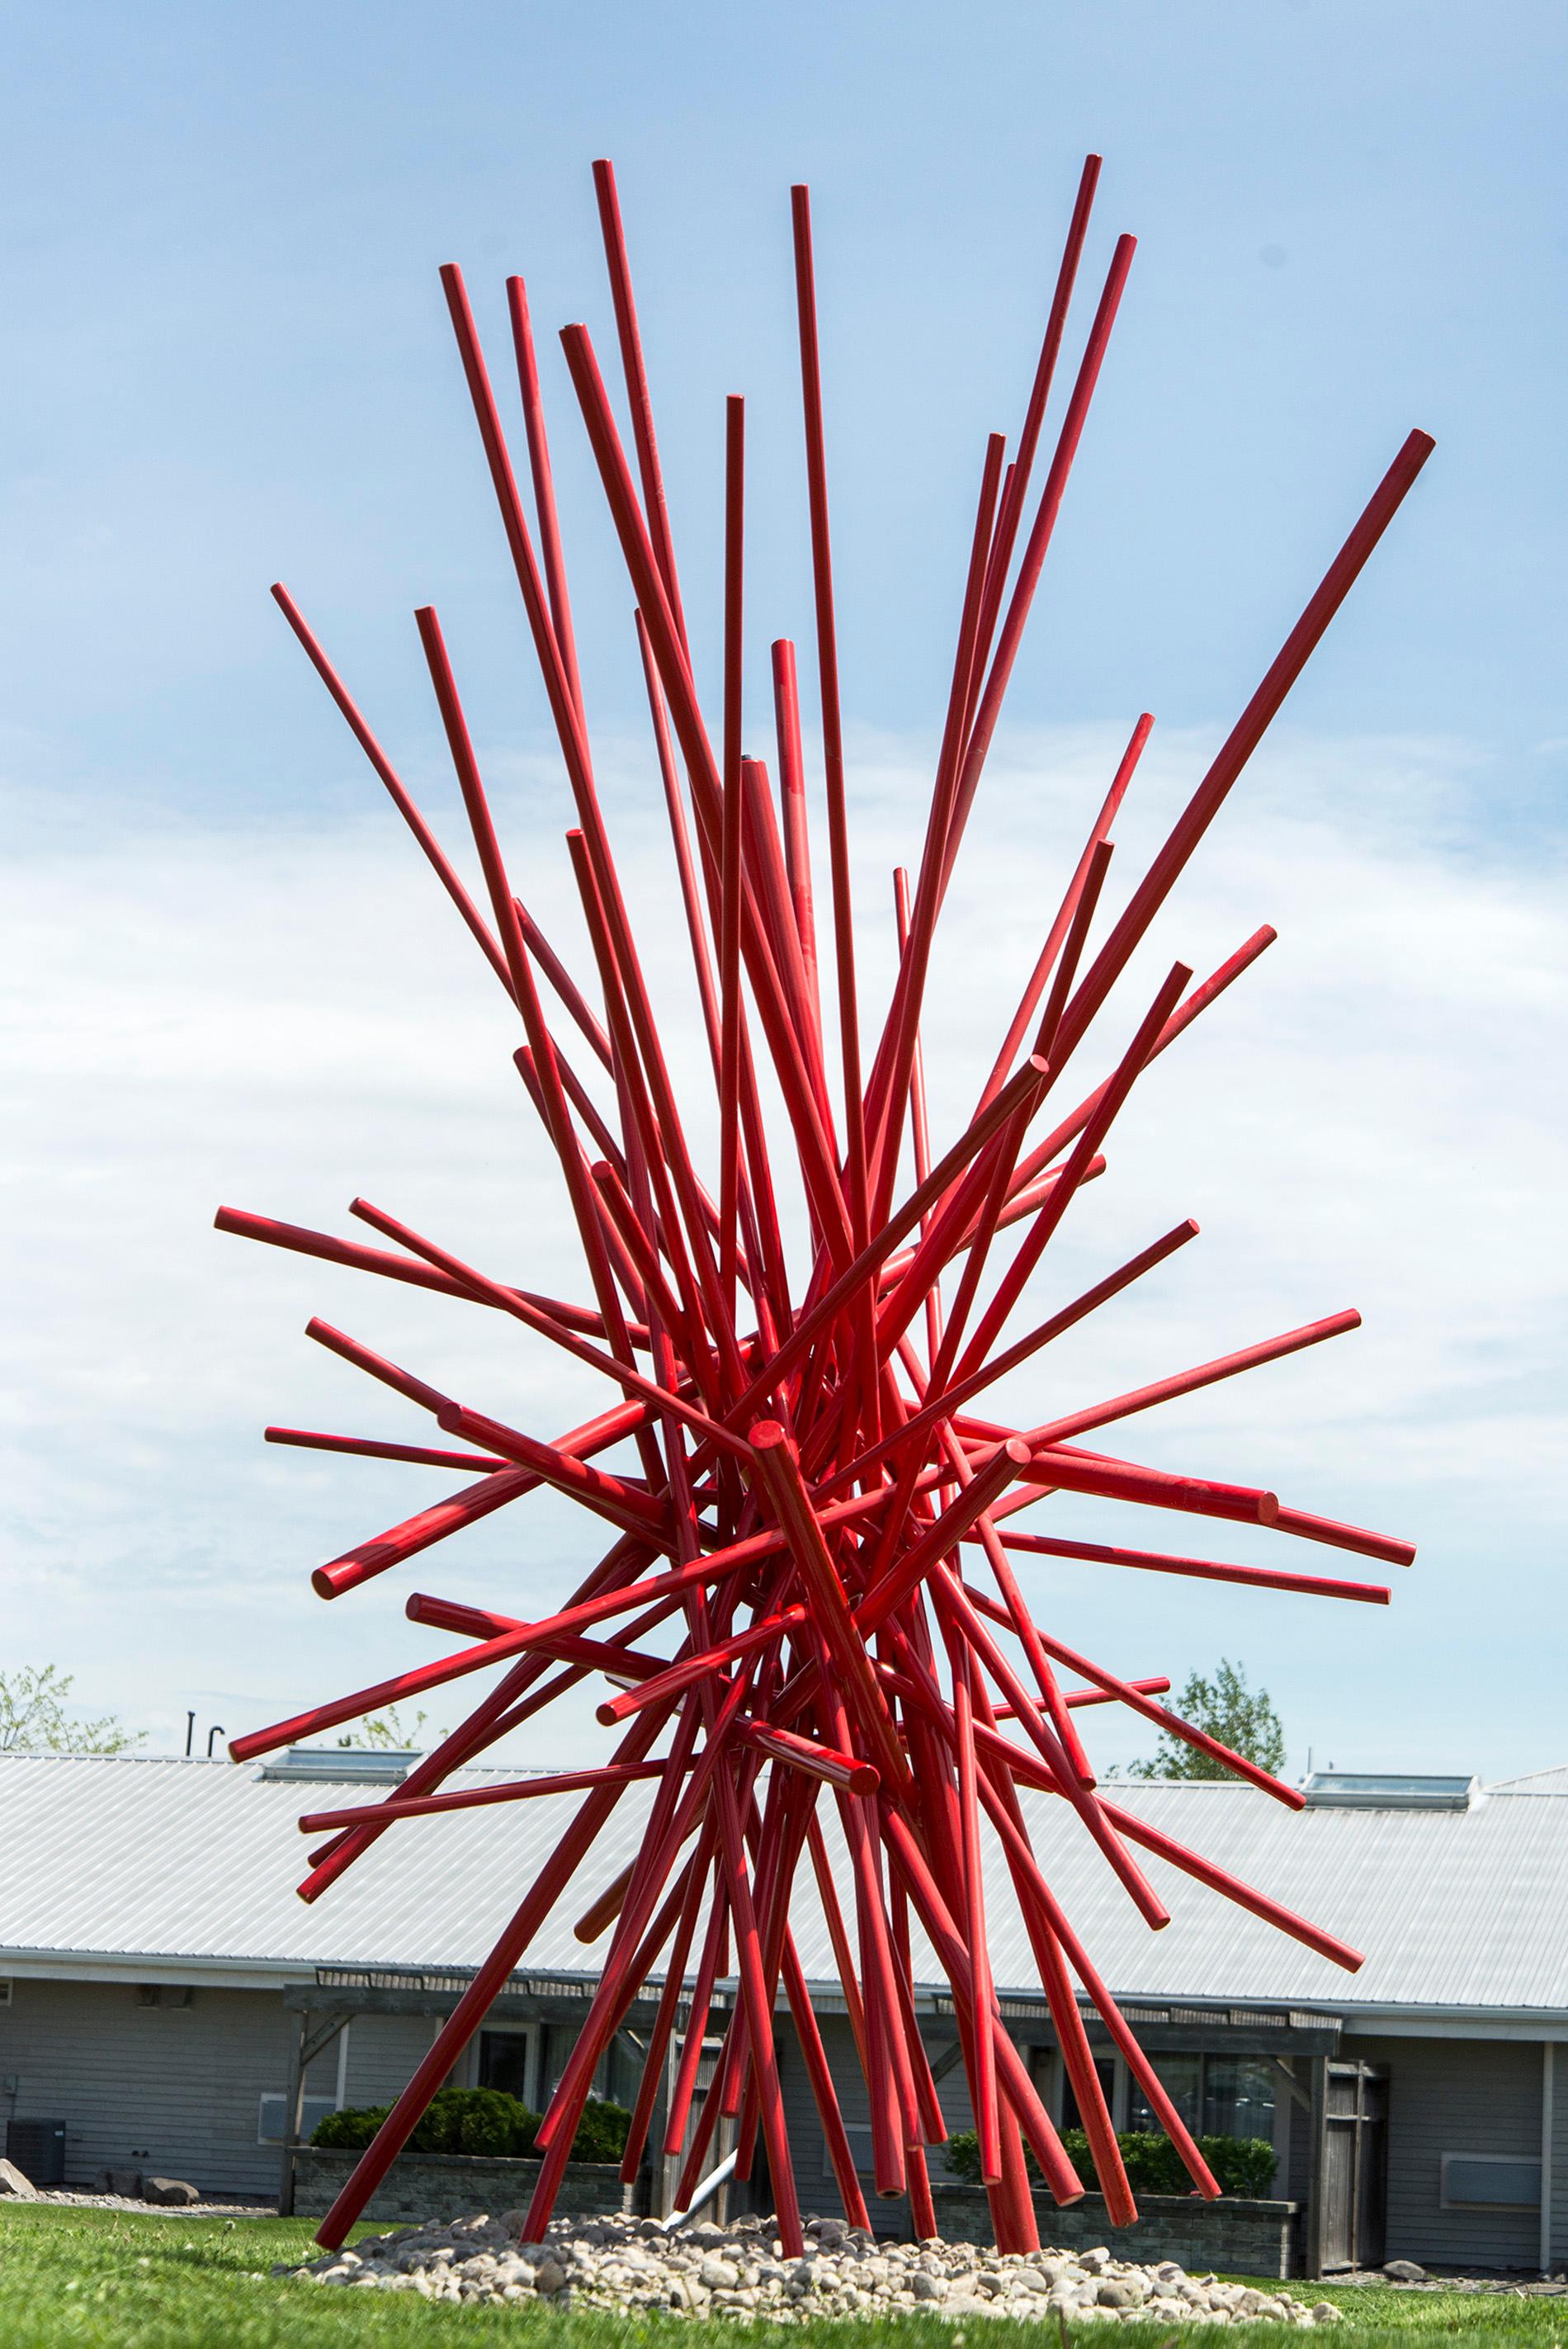 In einer Farbexplosion kreuzen sich leuchtend rot lackierte Stahlstangen in dieser dynamischen abstrakten Skulptur von Shayne Dark. In seinem Studio auf dem Lande lässt sich der kanadische Künstler ständig von der Natur inspirieren. Durch die